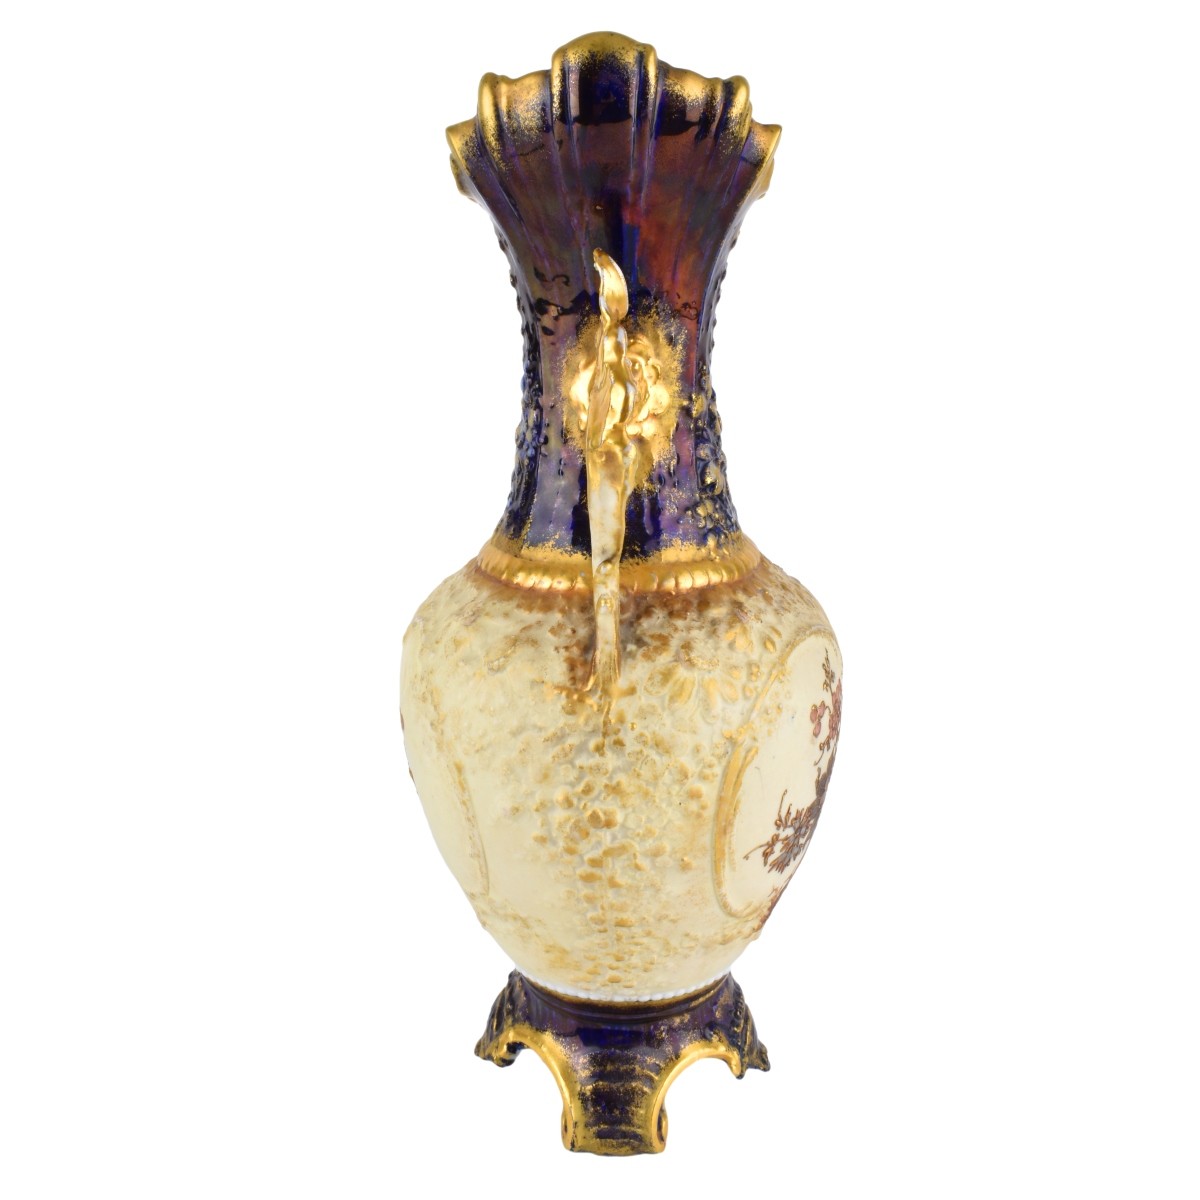 Two (2) Turn Teplitz Amphora Vases